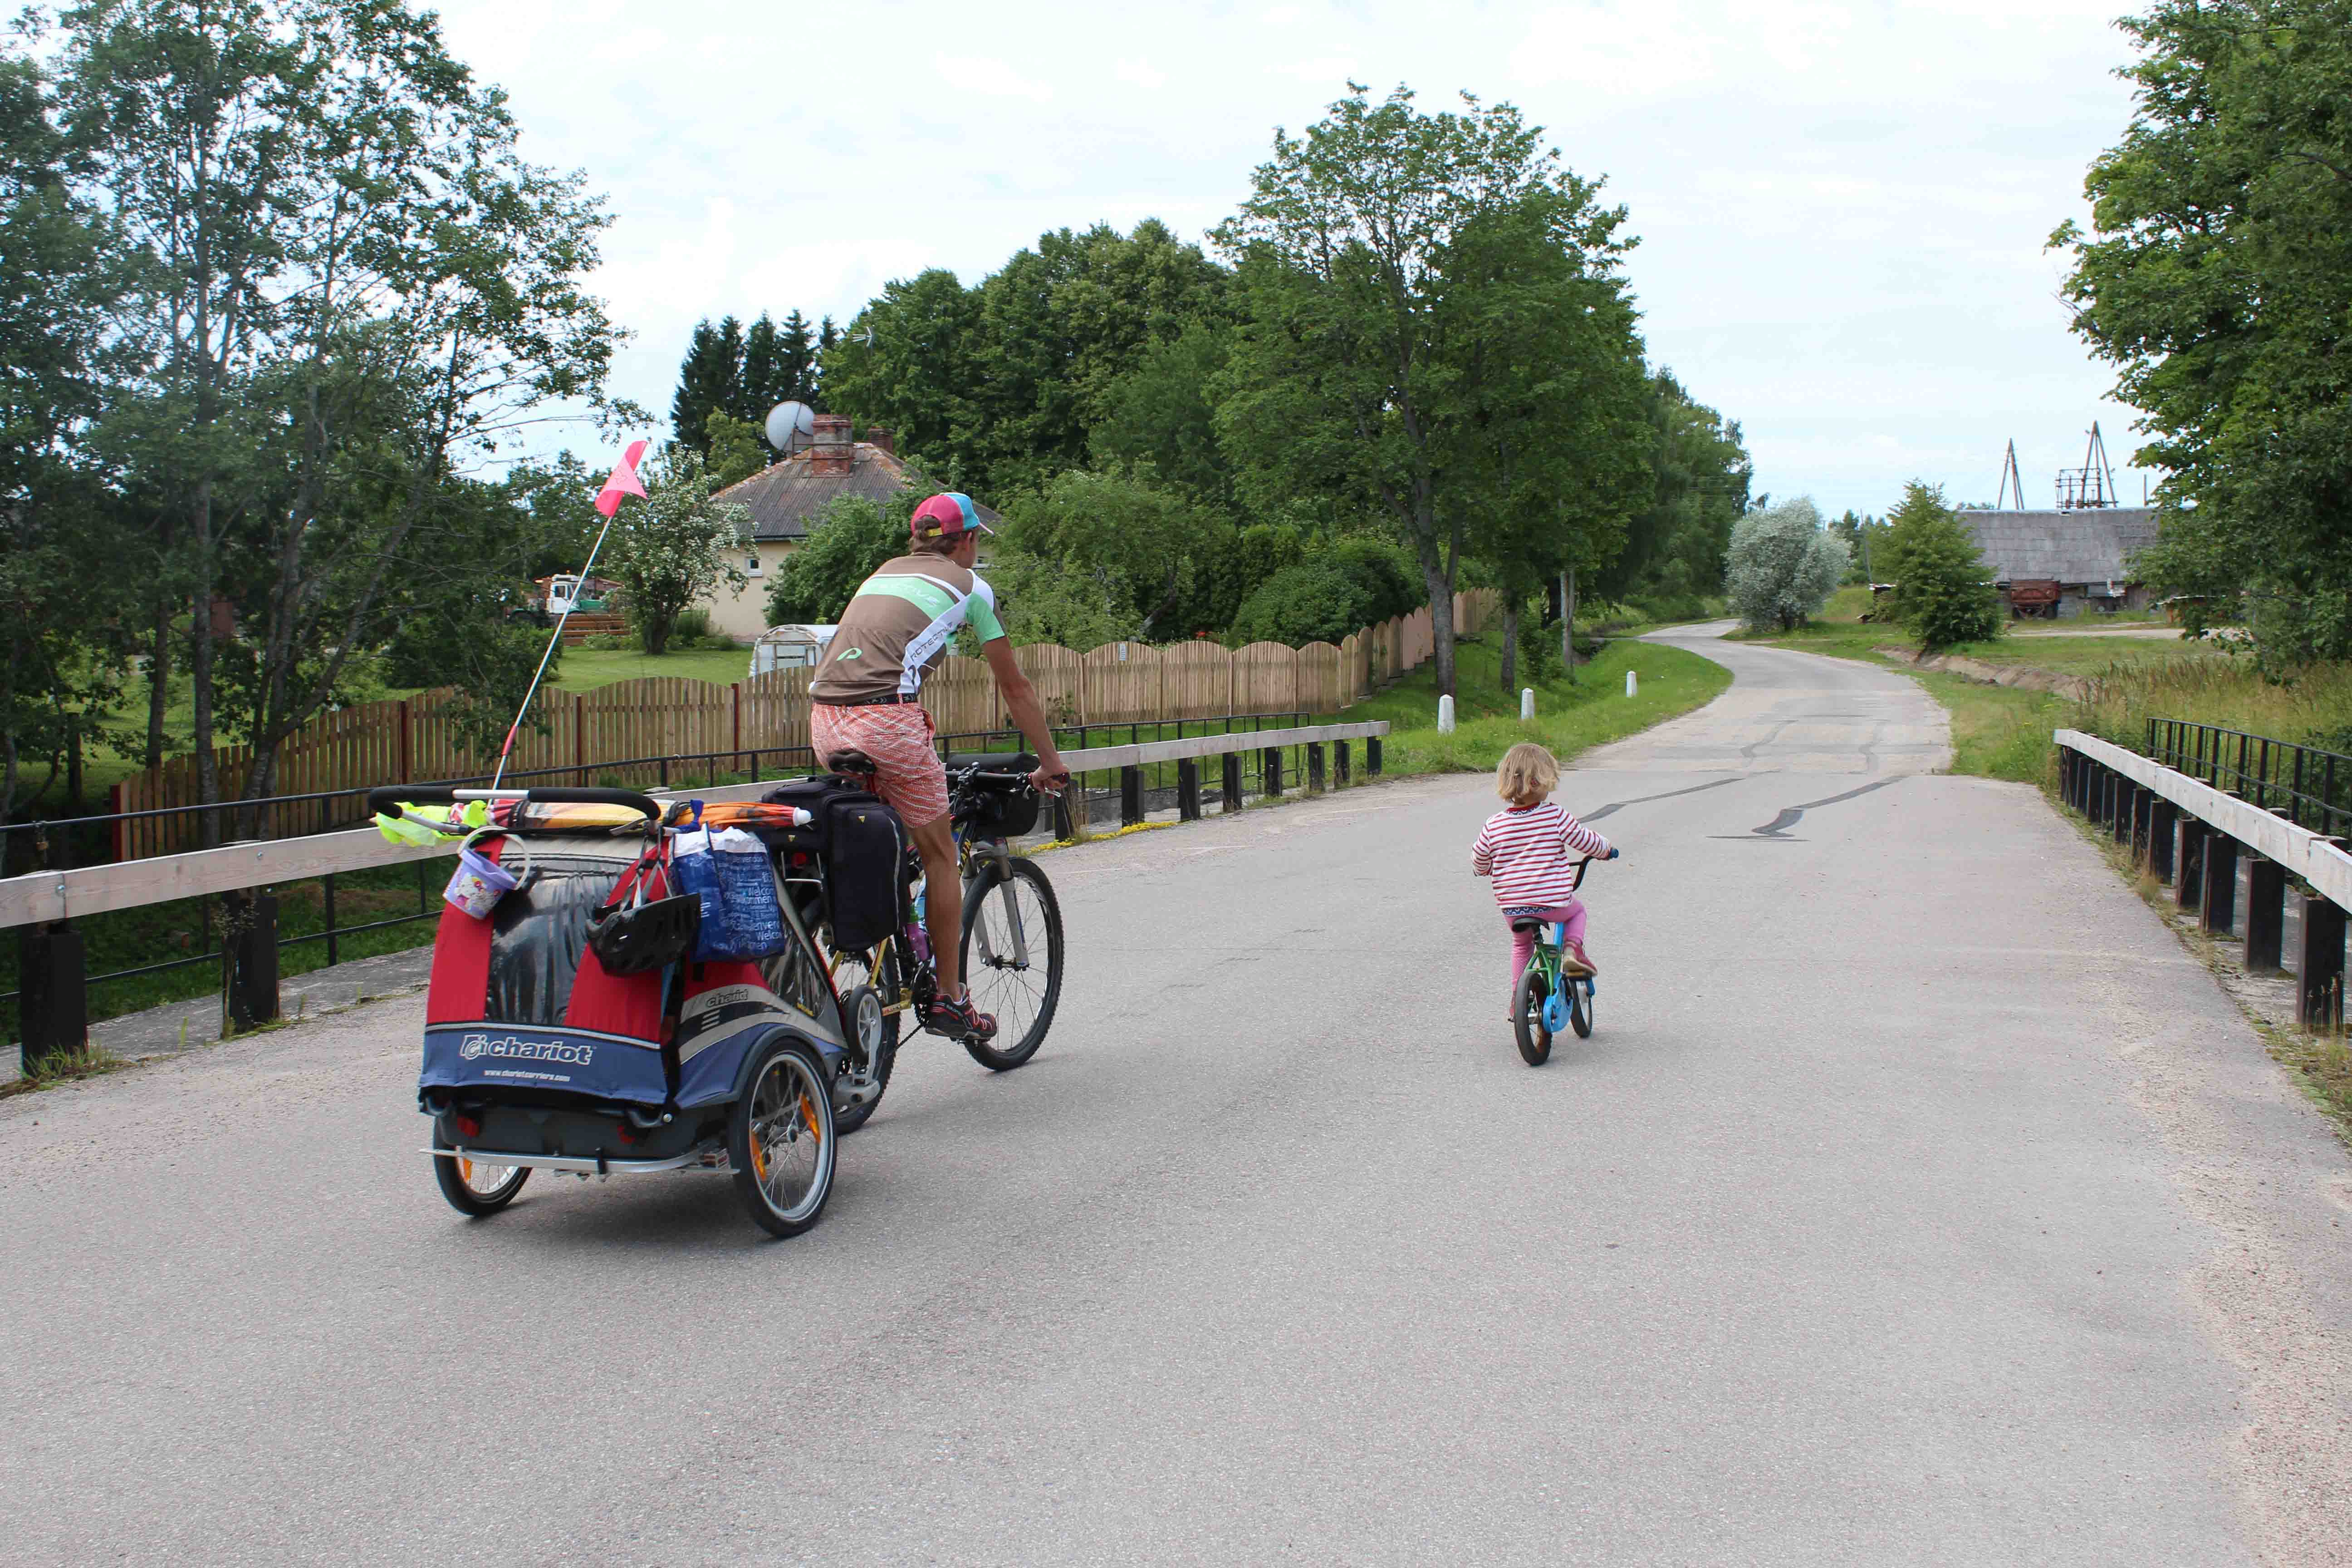 Radreise Familie Ausrüstung - Unsere Stories und Tipps. Begleite uns und unsere 3 Kinder auf unseren Reisen mit Fahrrad und Zelt! 8 Monate Süd-Ost Europa...